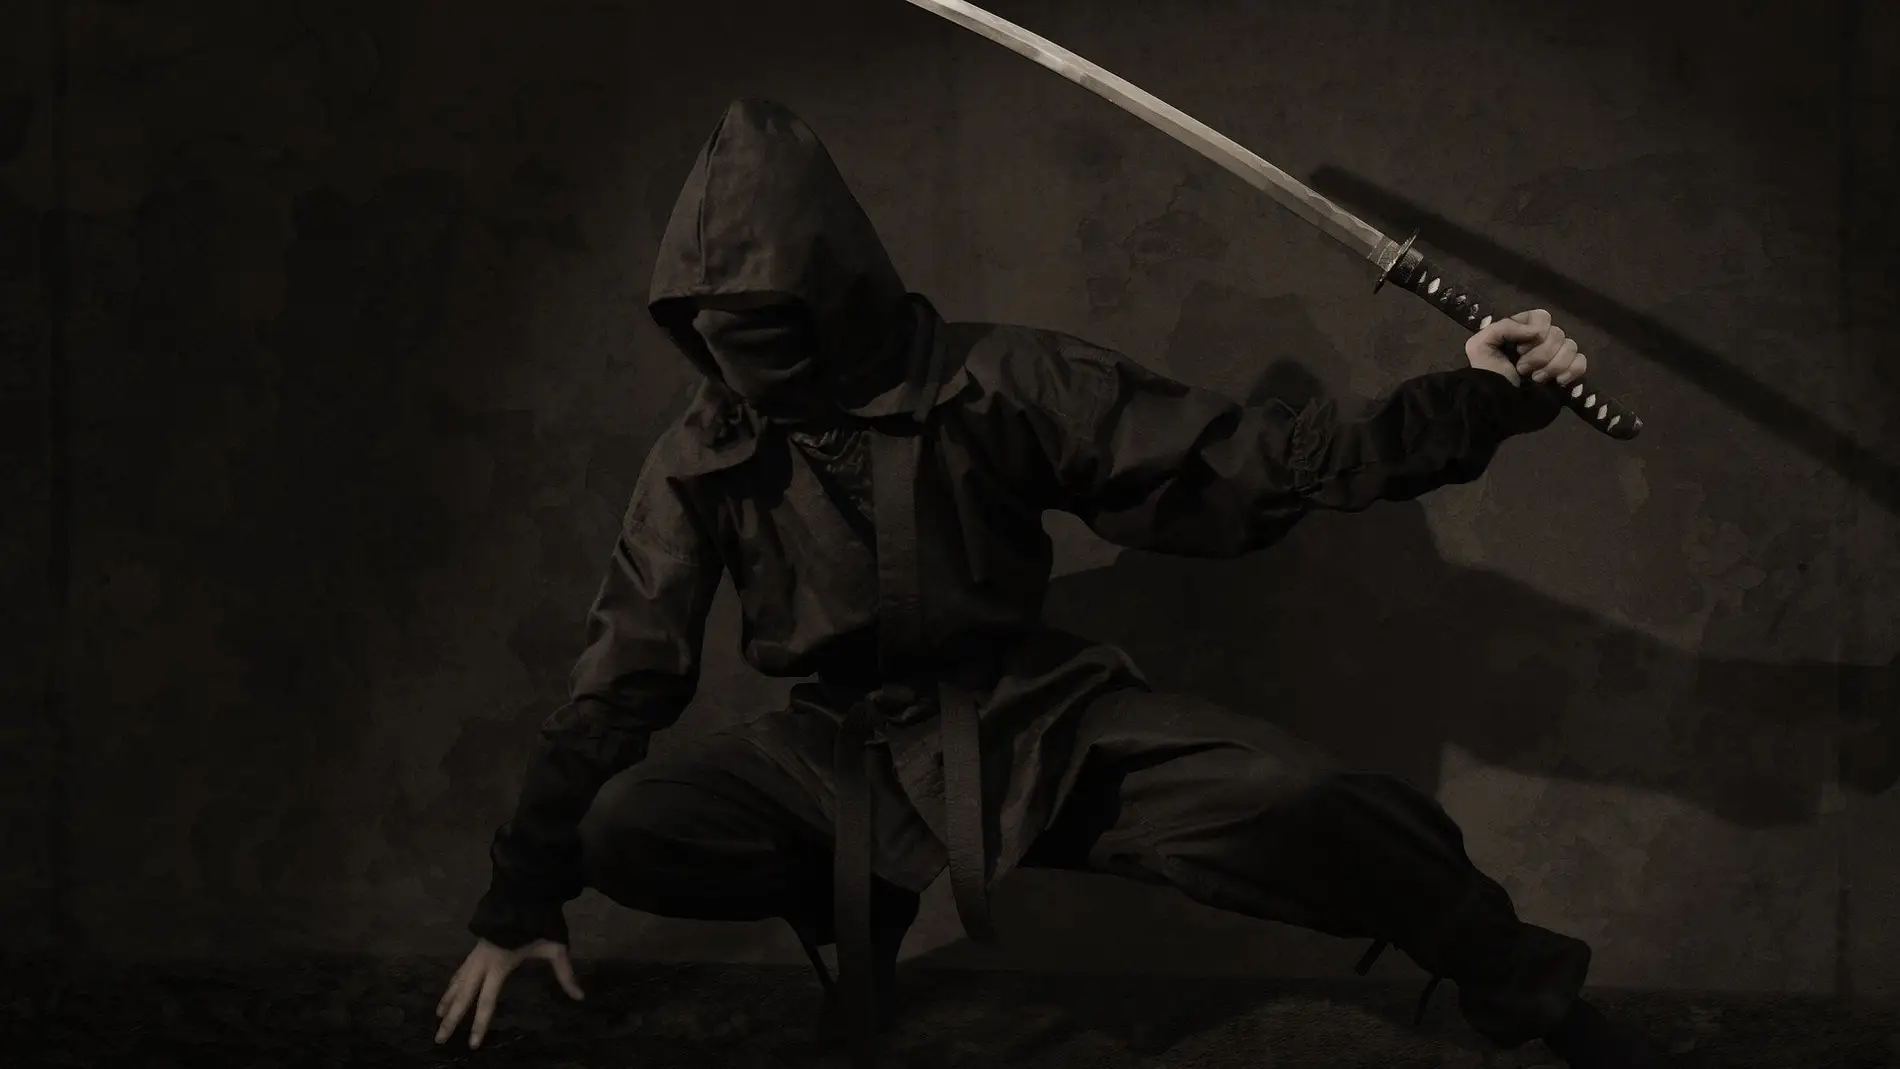 ¿Alguna vez has soñado con seguir el camino ninja? Esta academia puede hacer tu sueño realidad